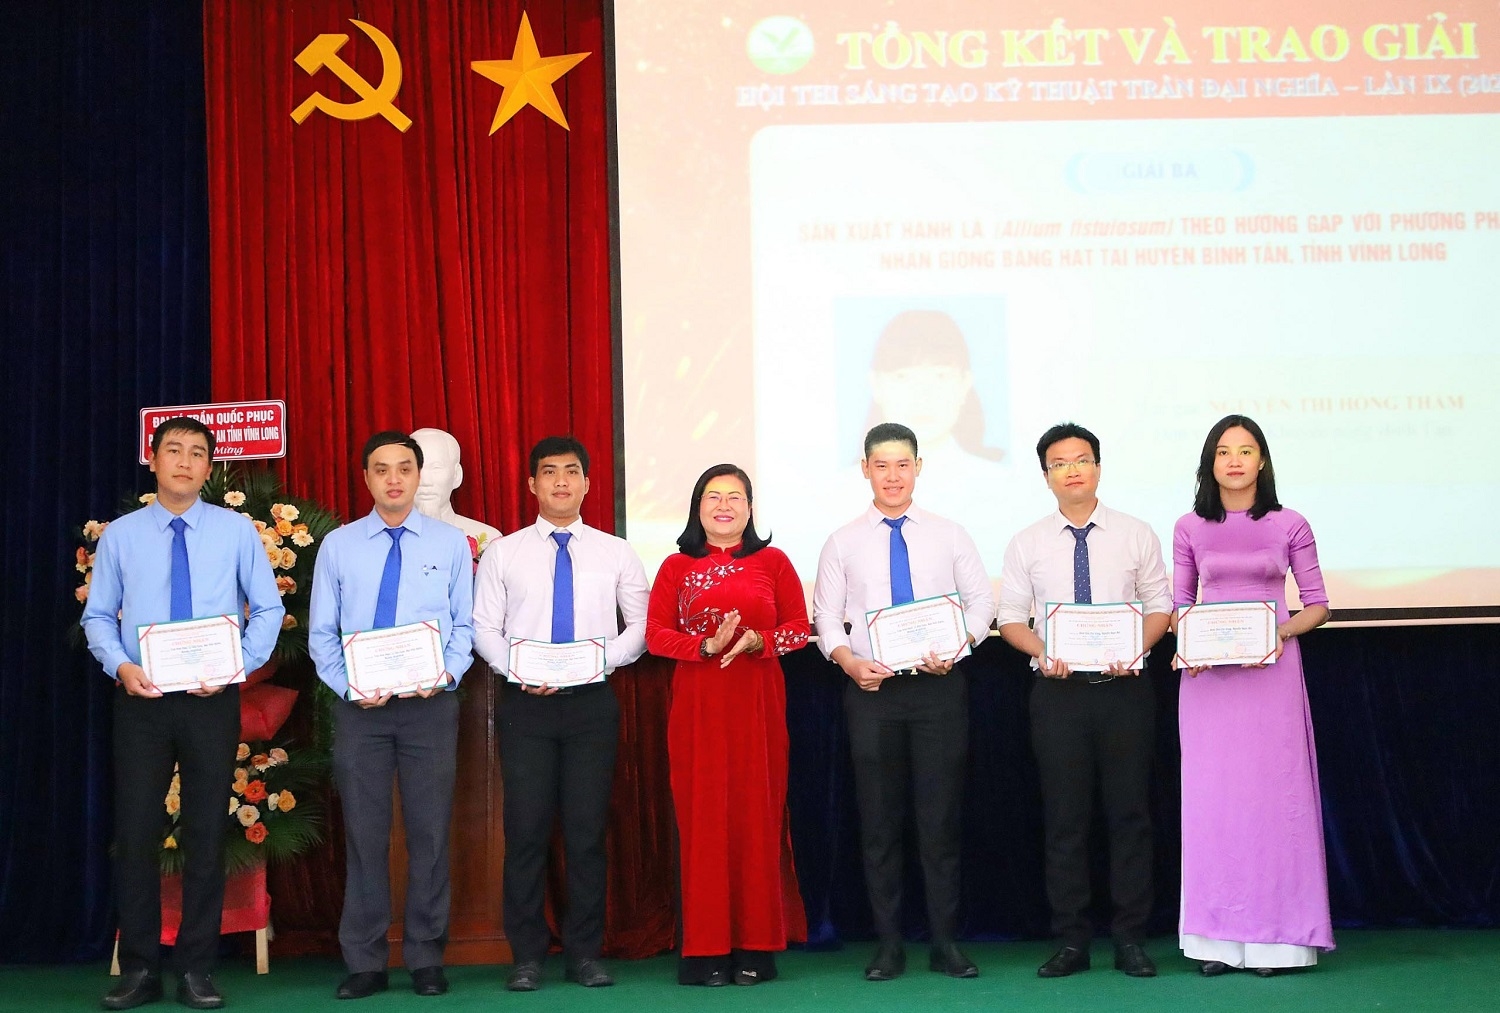 Bà Nguyễn Thị Minh Trang - Trưởng Ban Tuyên giáo Tỉnh ủy Vĩnh Long trao giải ba cho các tác giả